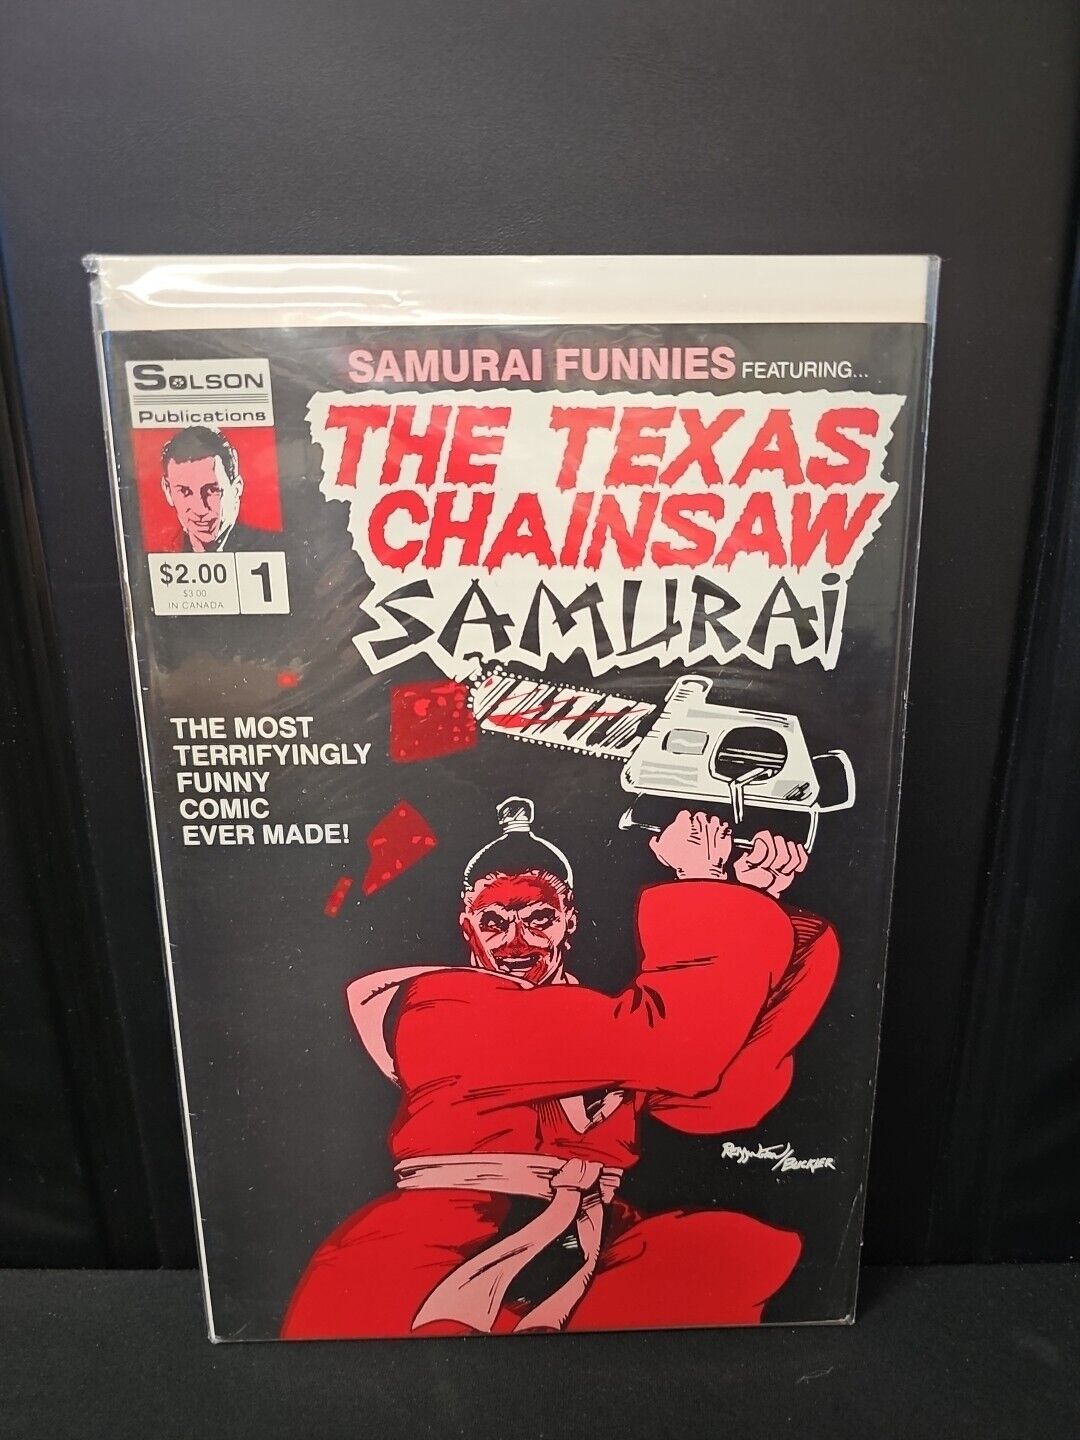 Samurai Funnies #1 The Texas Chainsaw Samurai 1986  Solson Comics FREE S/H